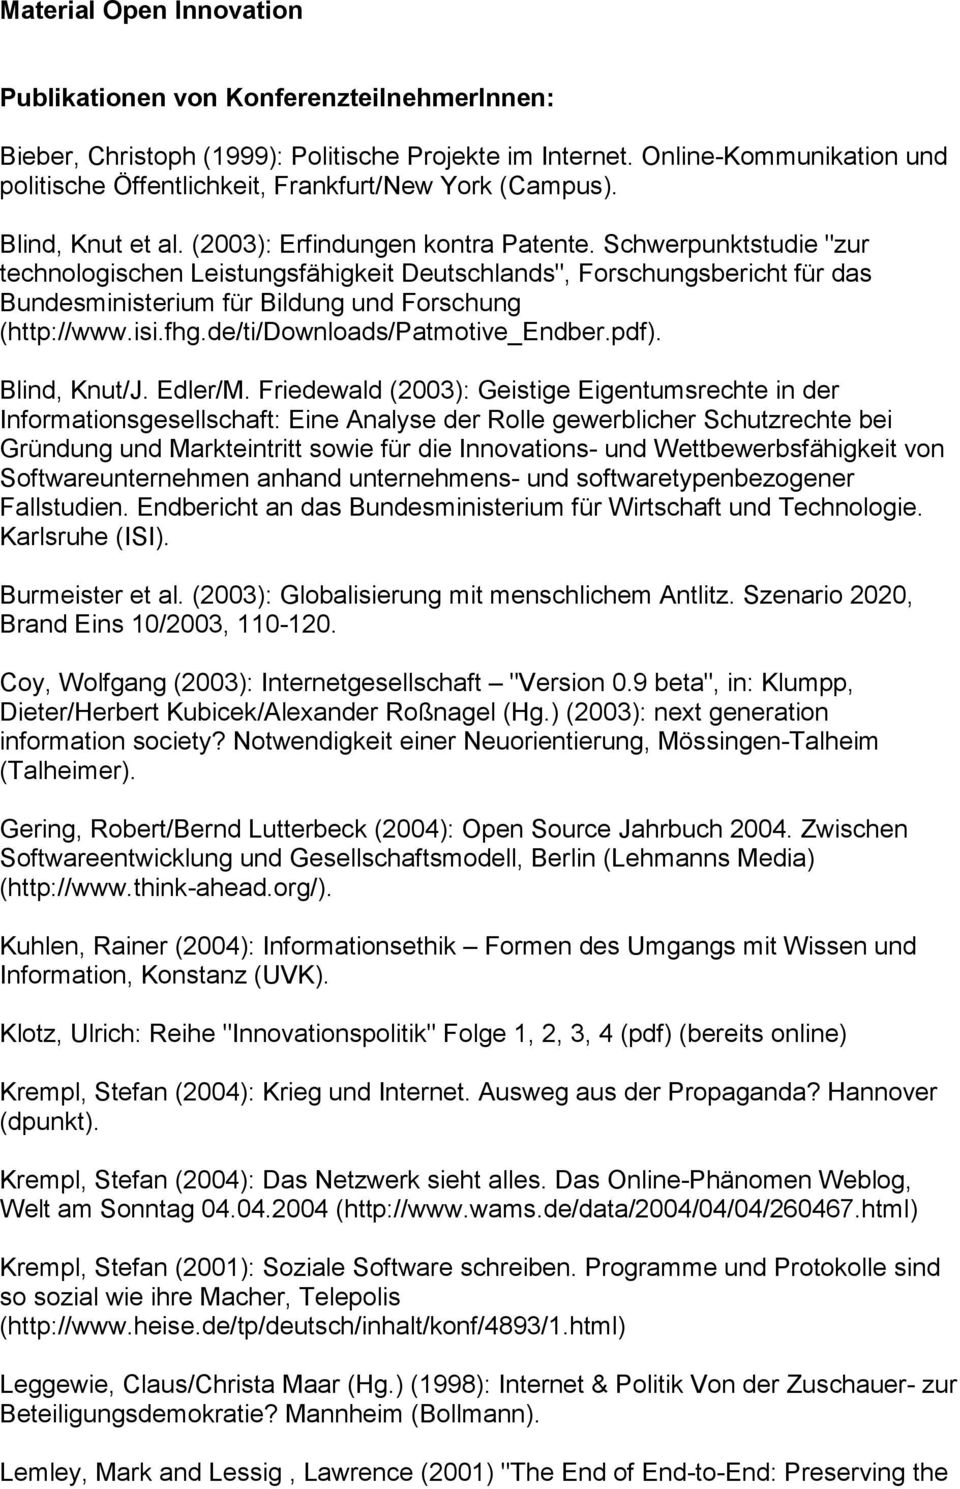 Schwerpunktstudie "zur technologischen Leistungsfähigkeit Deutschlands", Forschungsbericht für das Bundesministerium für Bildung und Forschung (http://www.isi.fhg.de/ti/downloads/patmotive_endber.